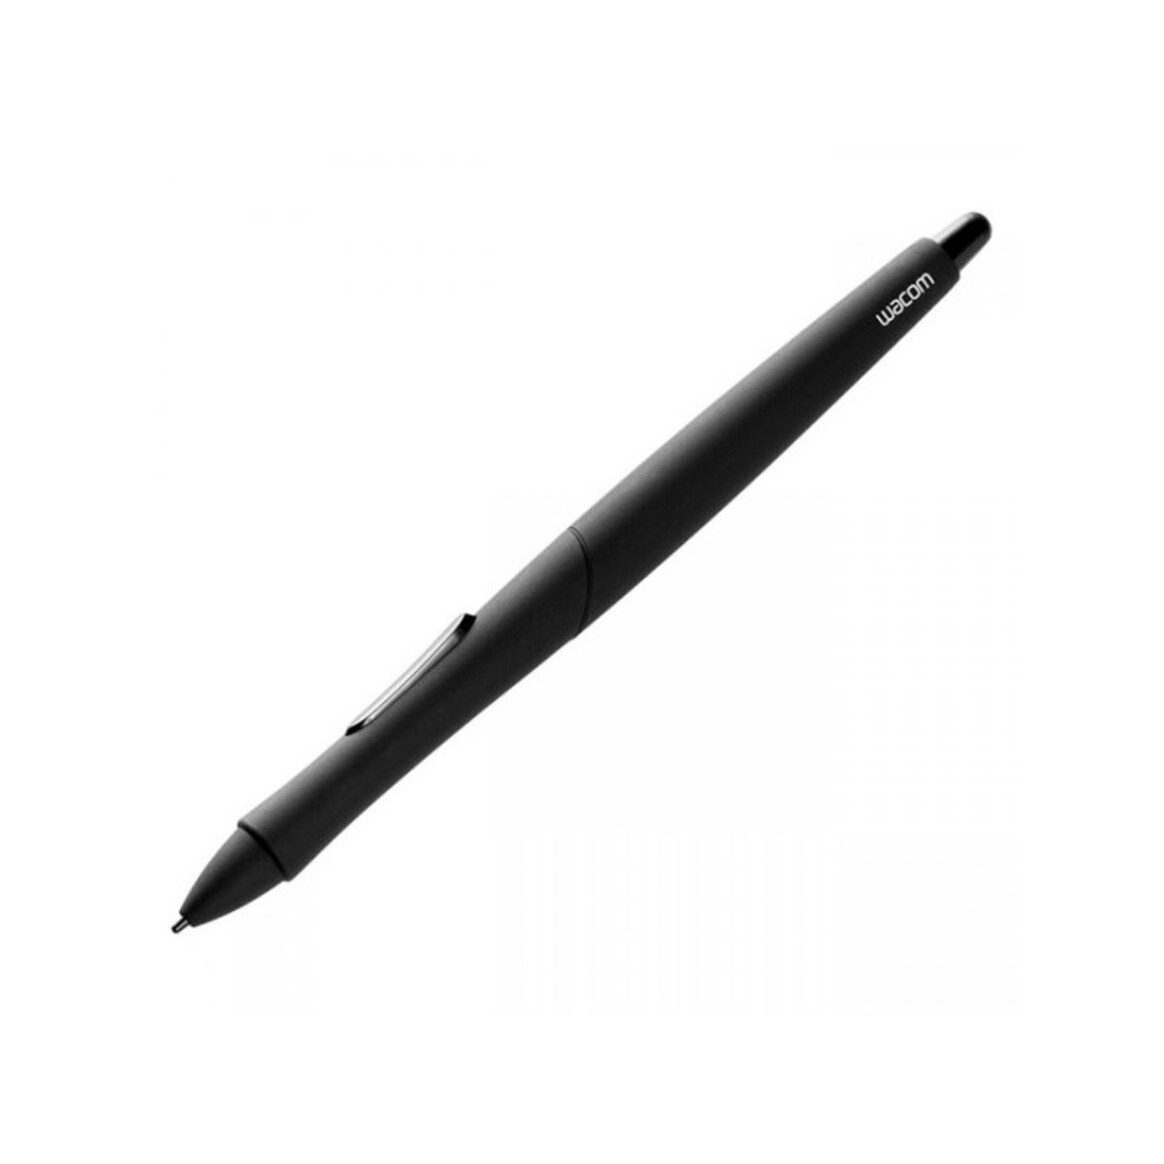 <h1>Wacom Intuos4 Classic Pen</h1>